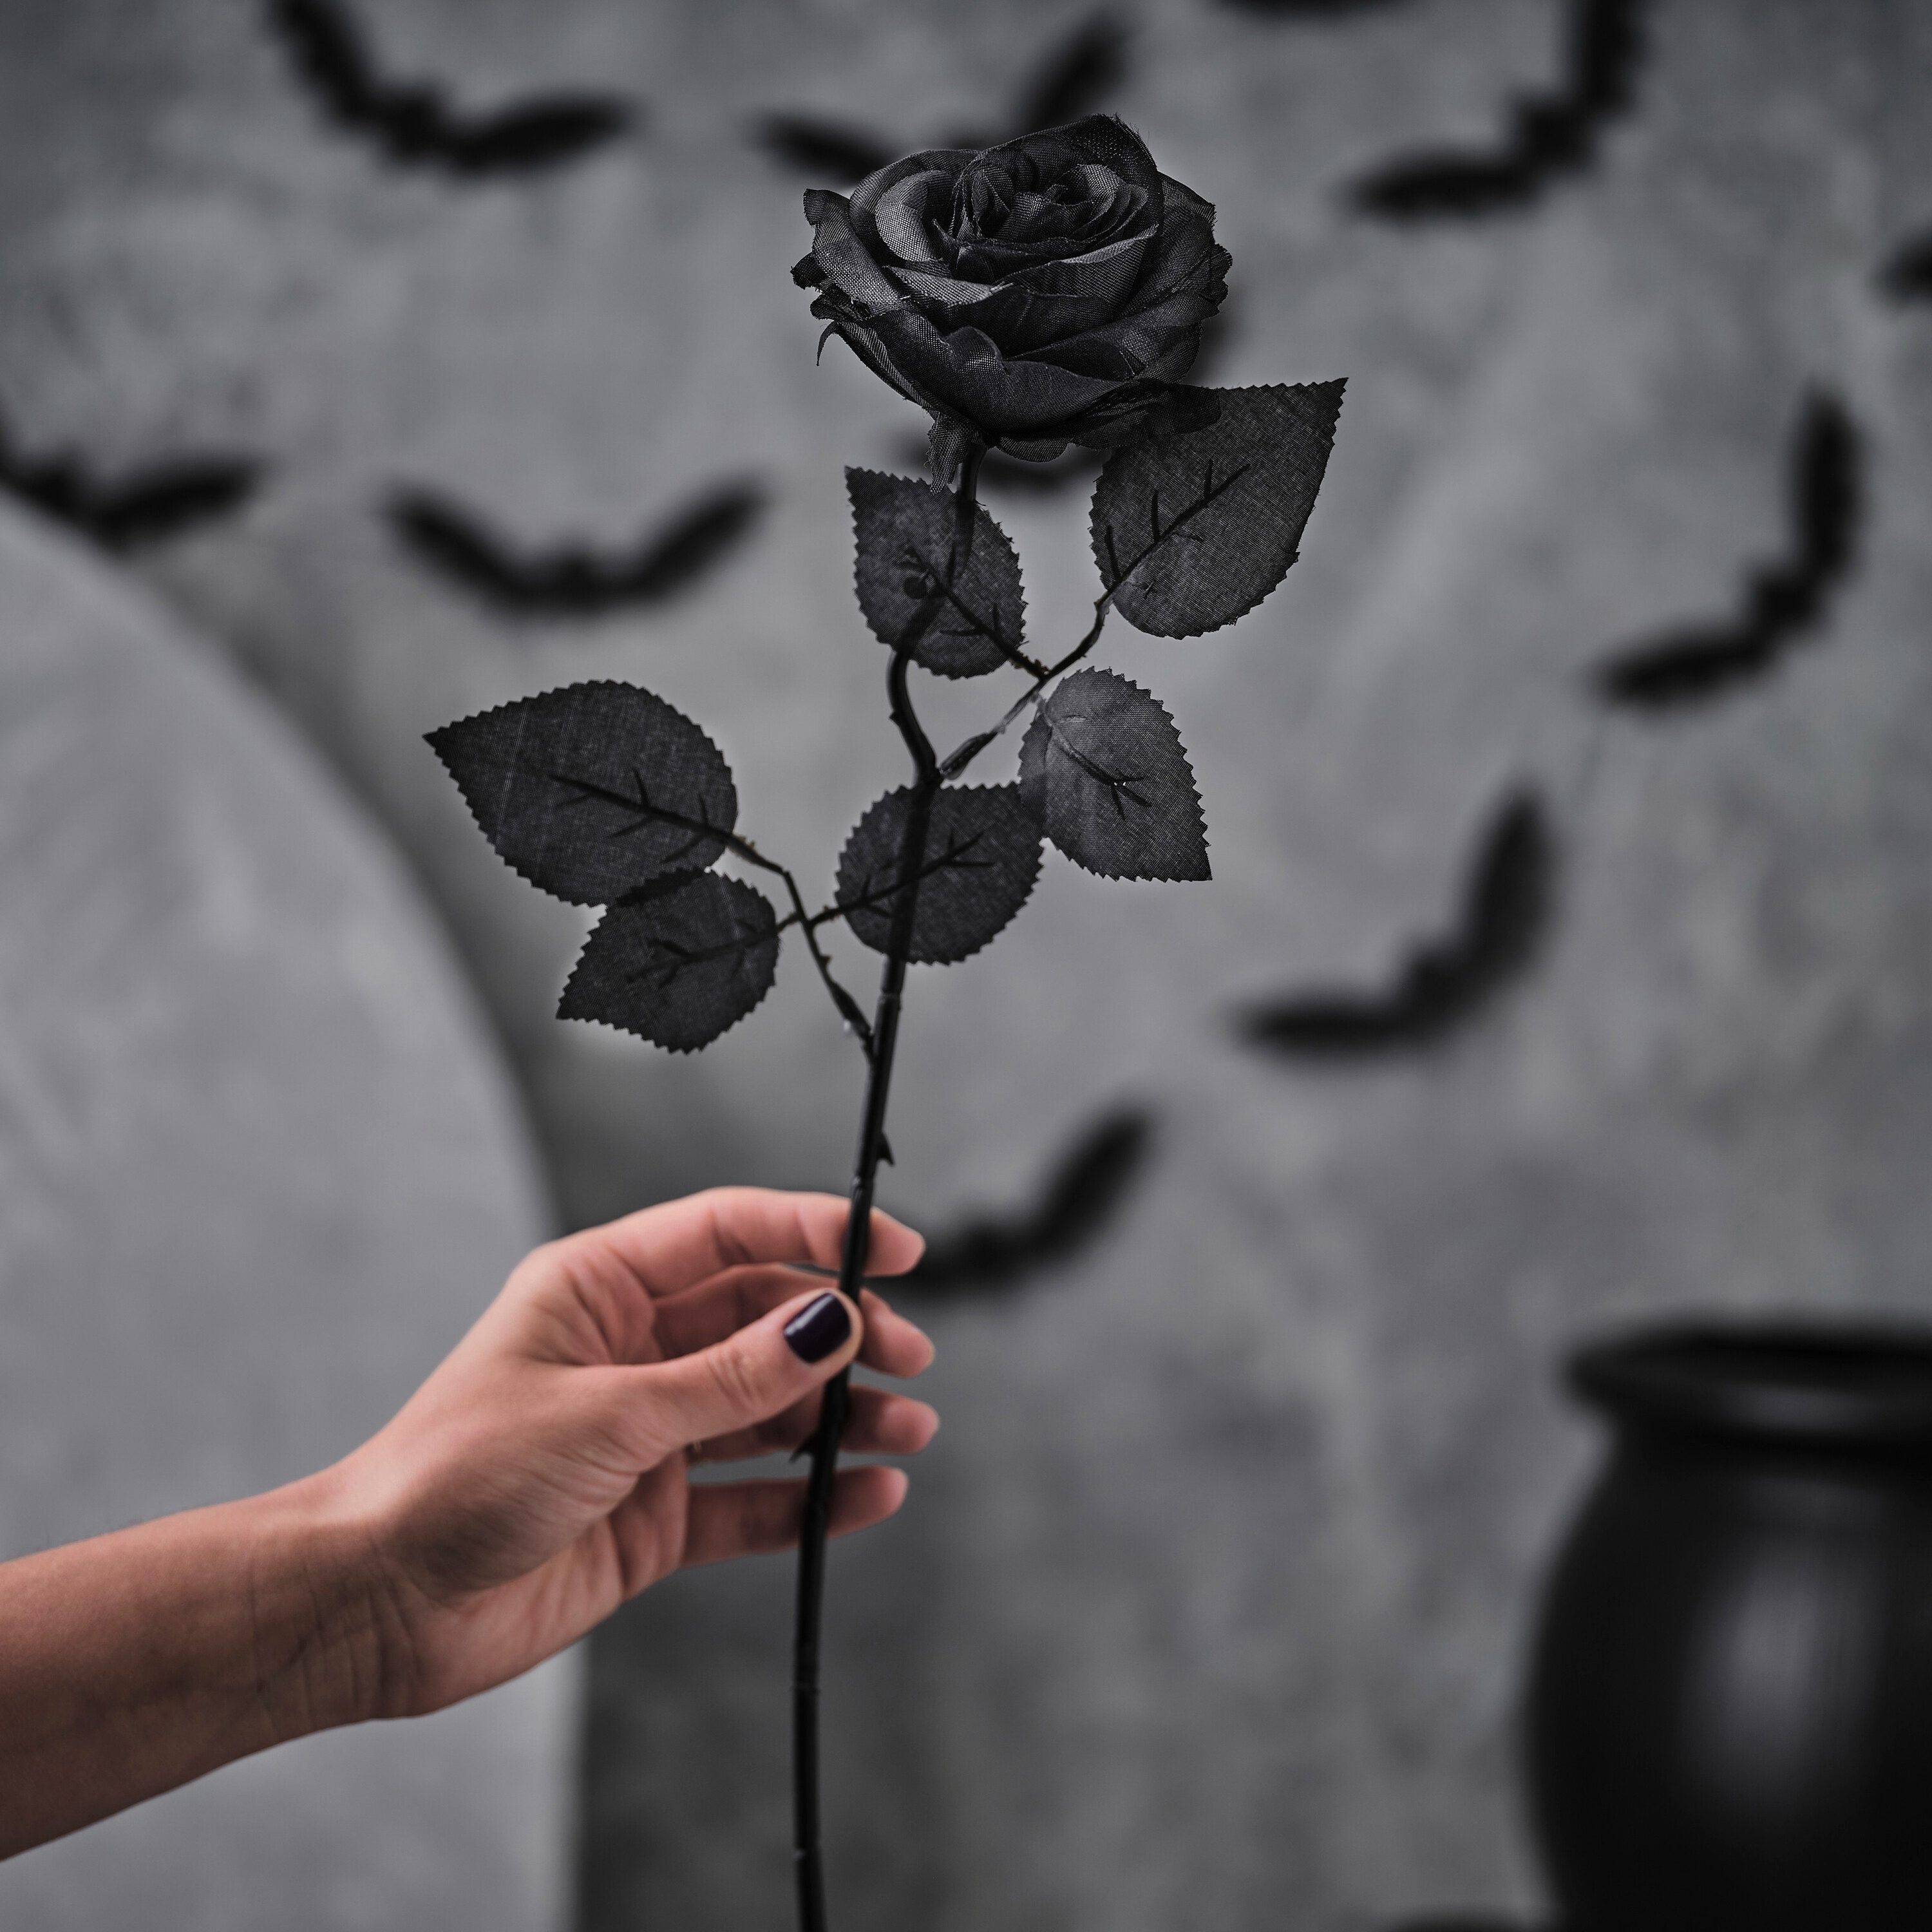  Schwarze Rosen Hintergrundbild 3000x3000. Kunst schwarze Rose Schwarze Blume künstliche schwarze Rose